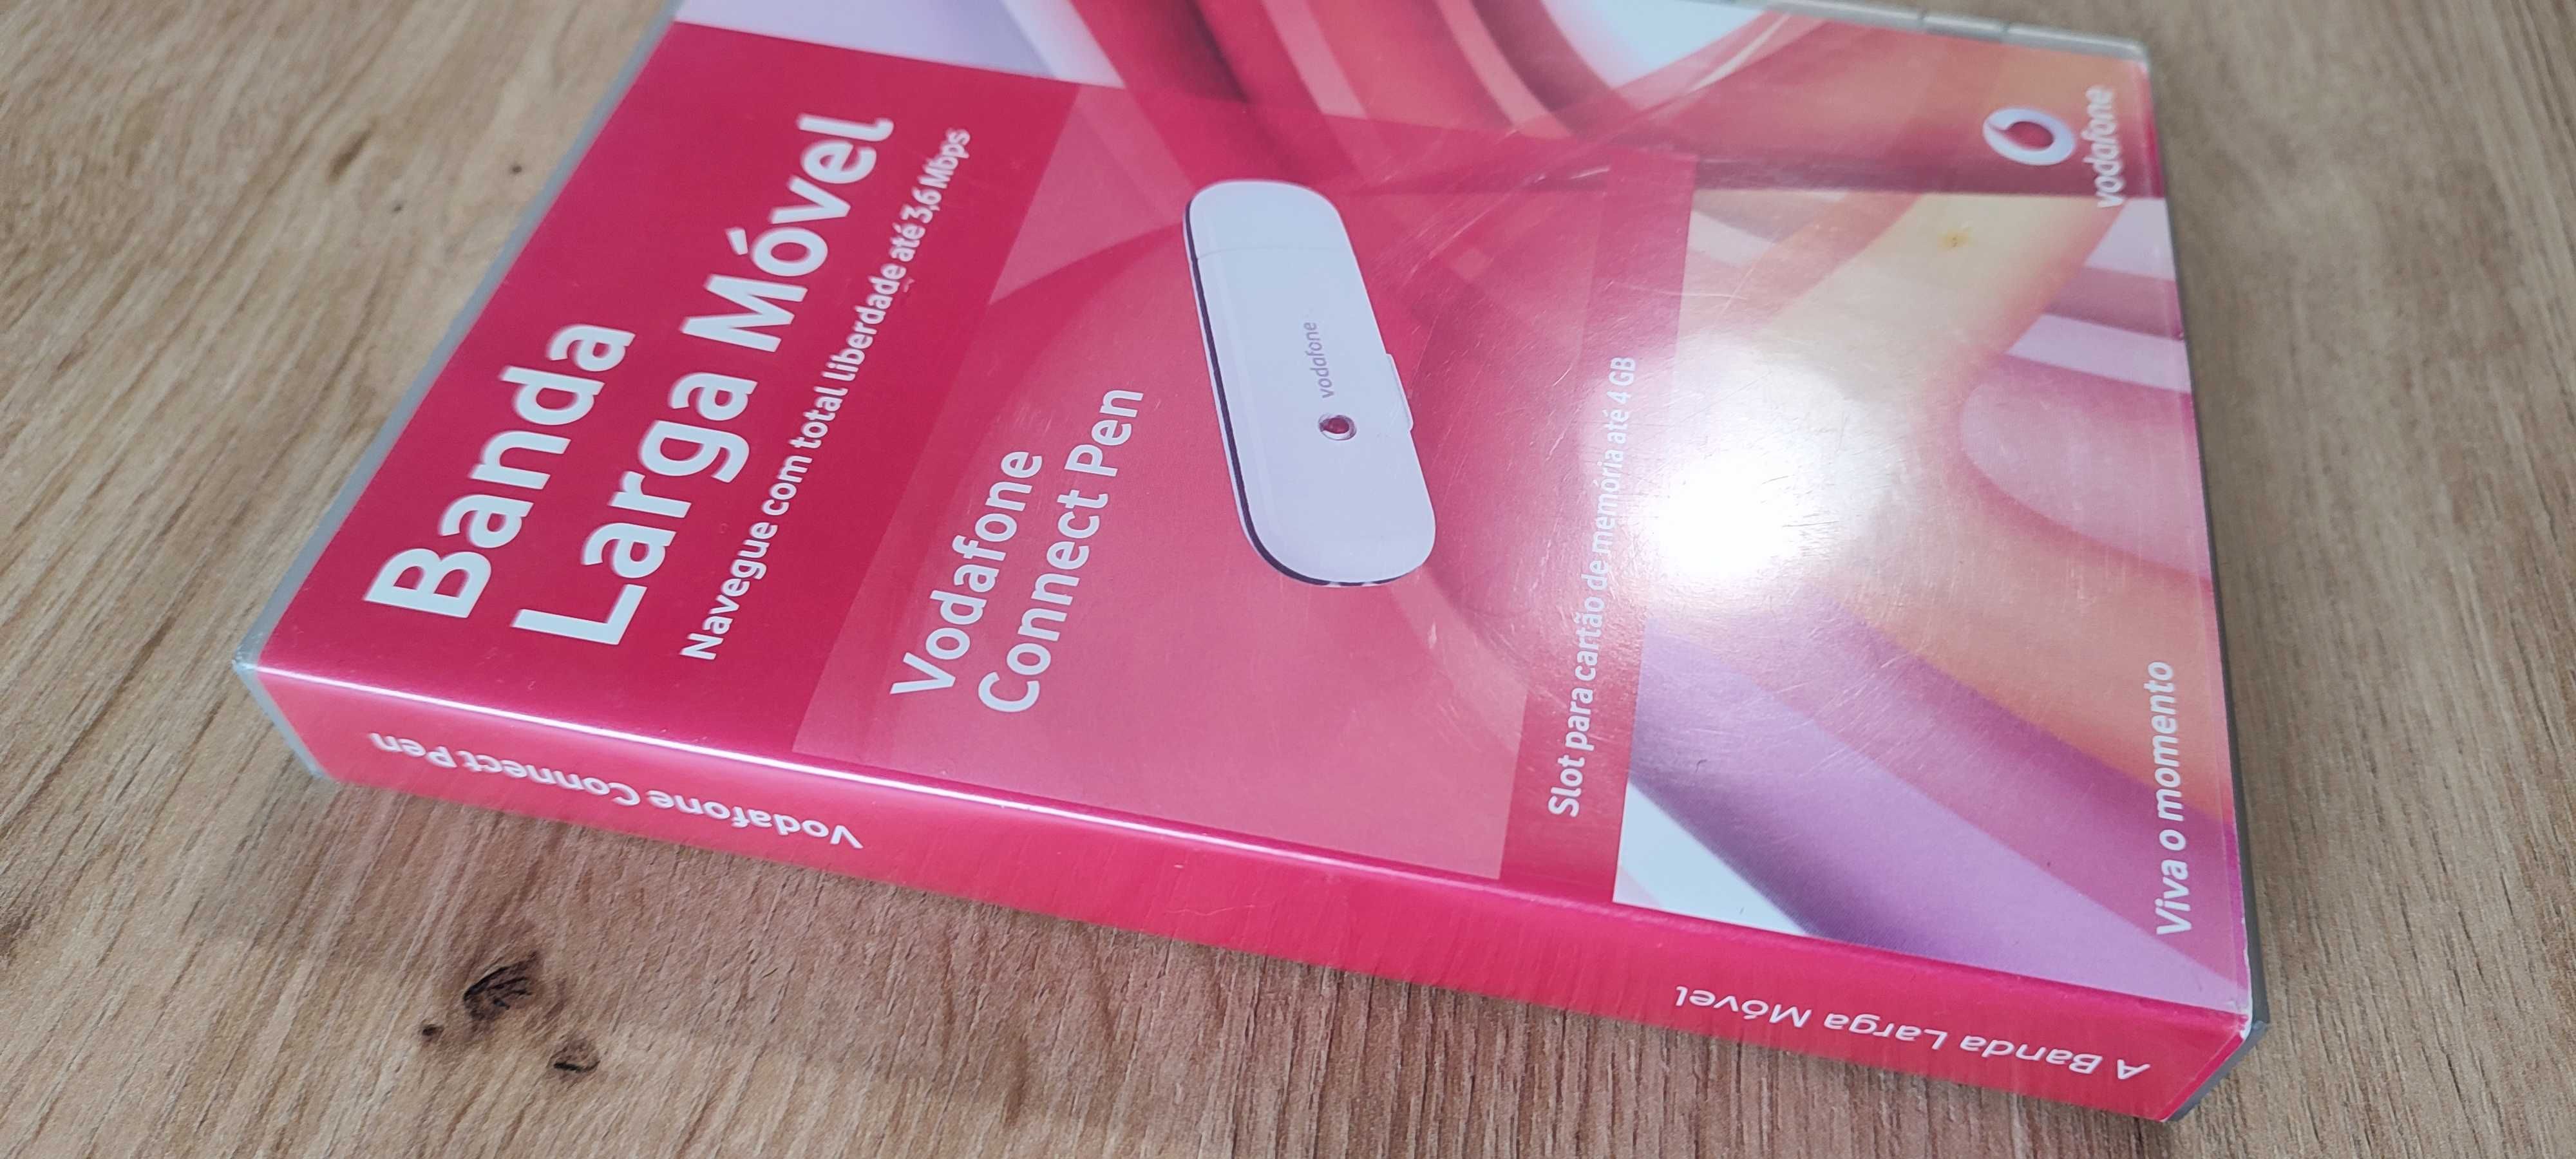 Vodafone connect Pen